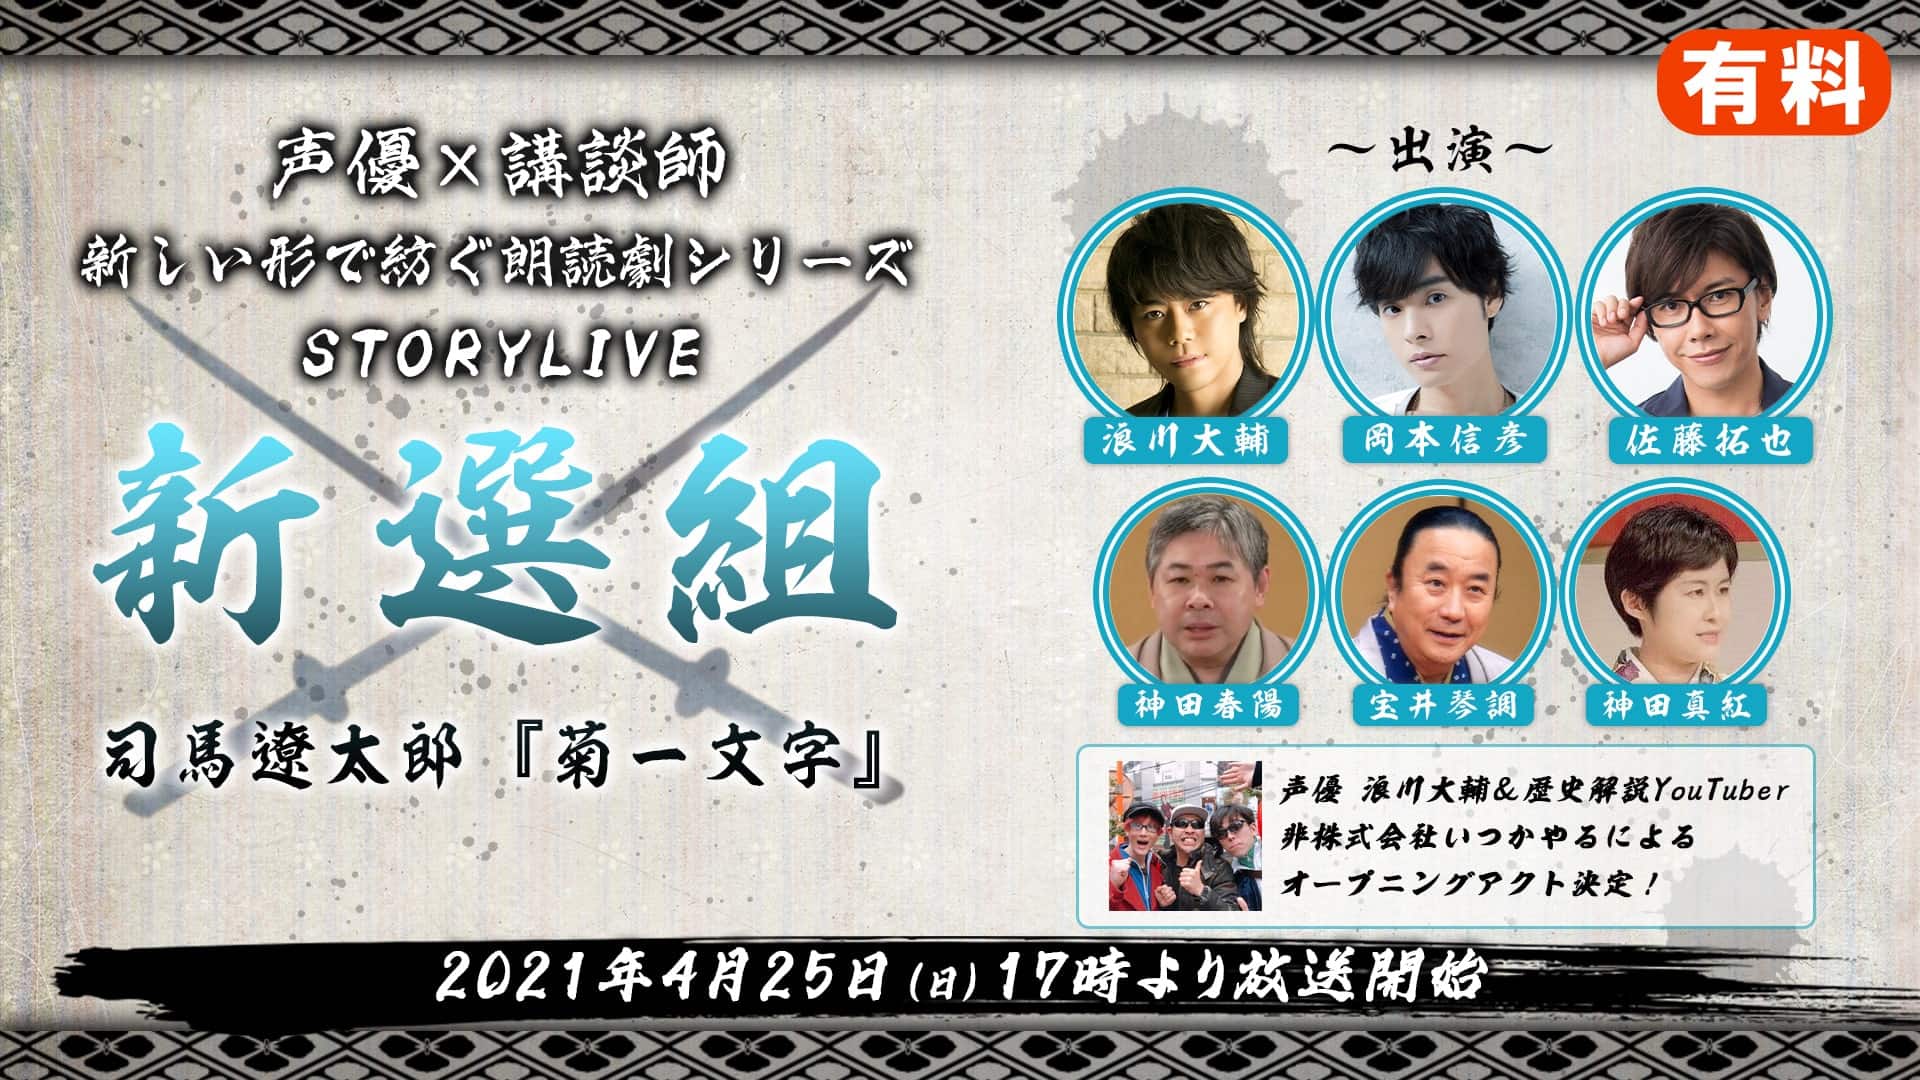 超声優祭21 日本最大級 の声優特化型イベント ニコニコ